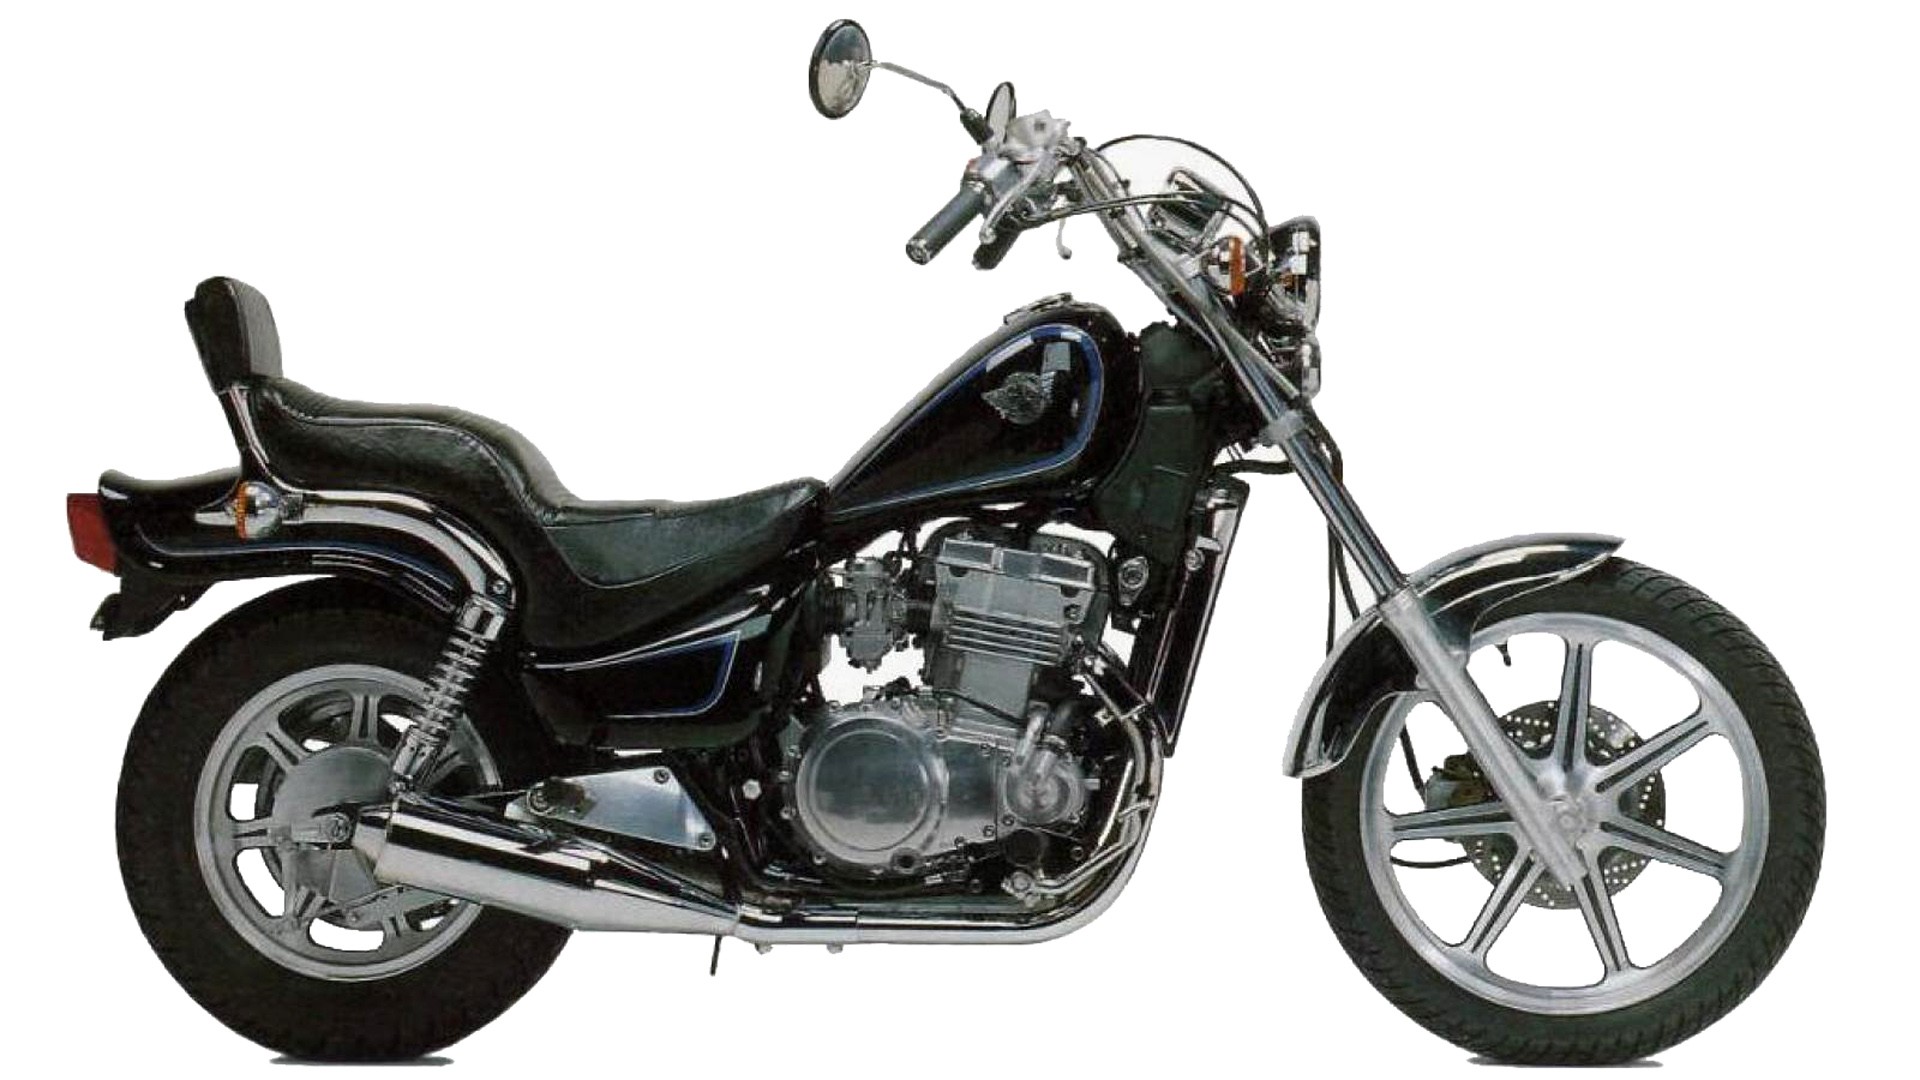 Moto del día: Kawasaki 500 - RACER moto